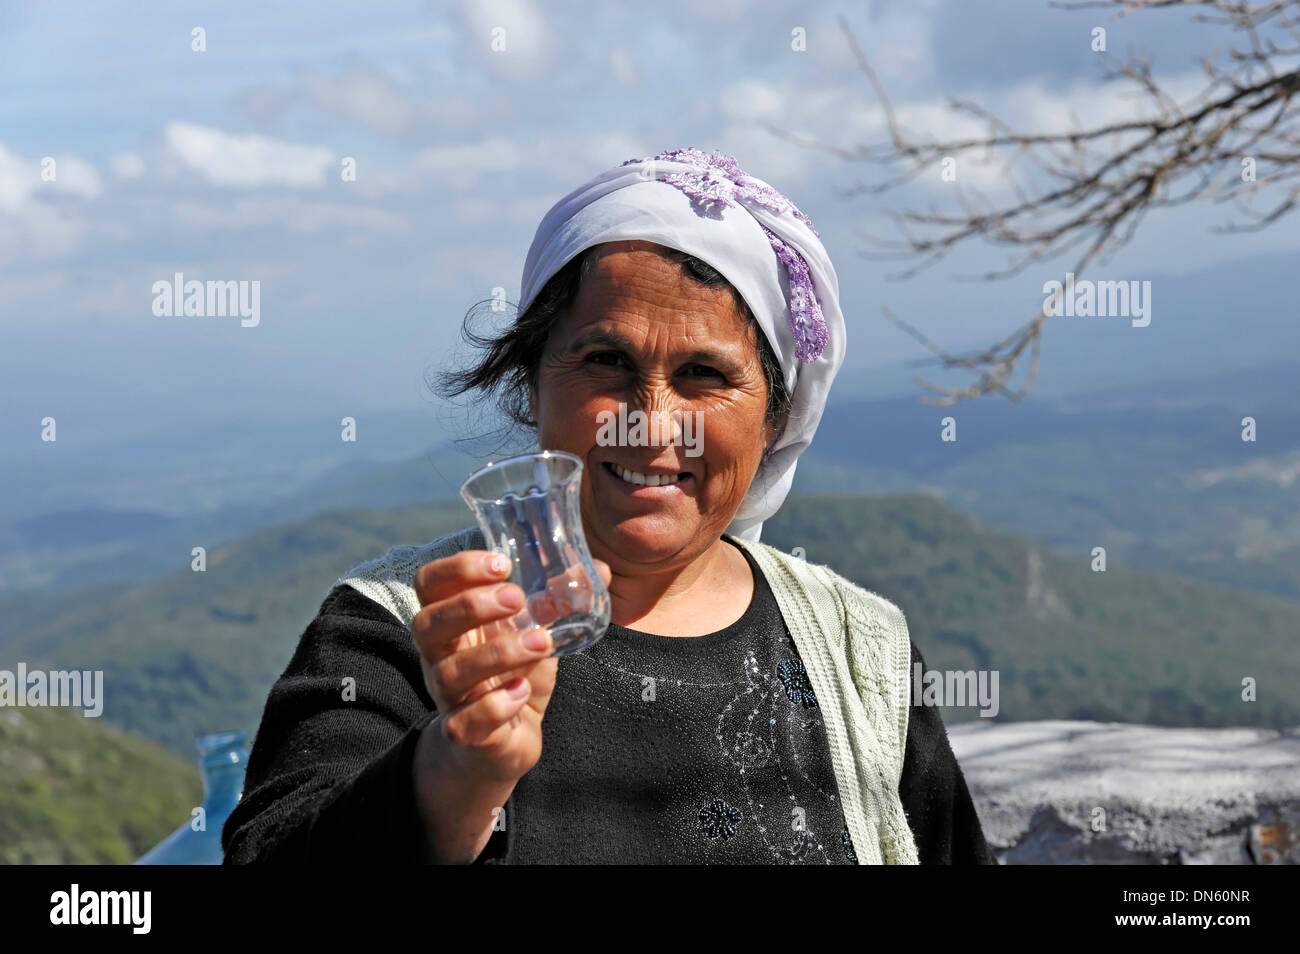 Turkish woman passing a glass in Akyaka, Muğla Province, Turkey Stock Photo